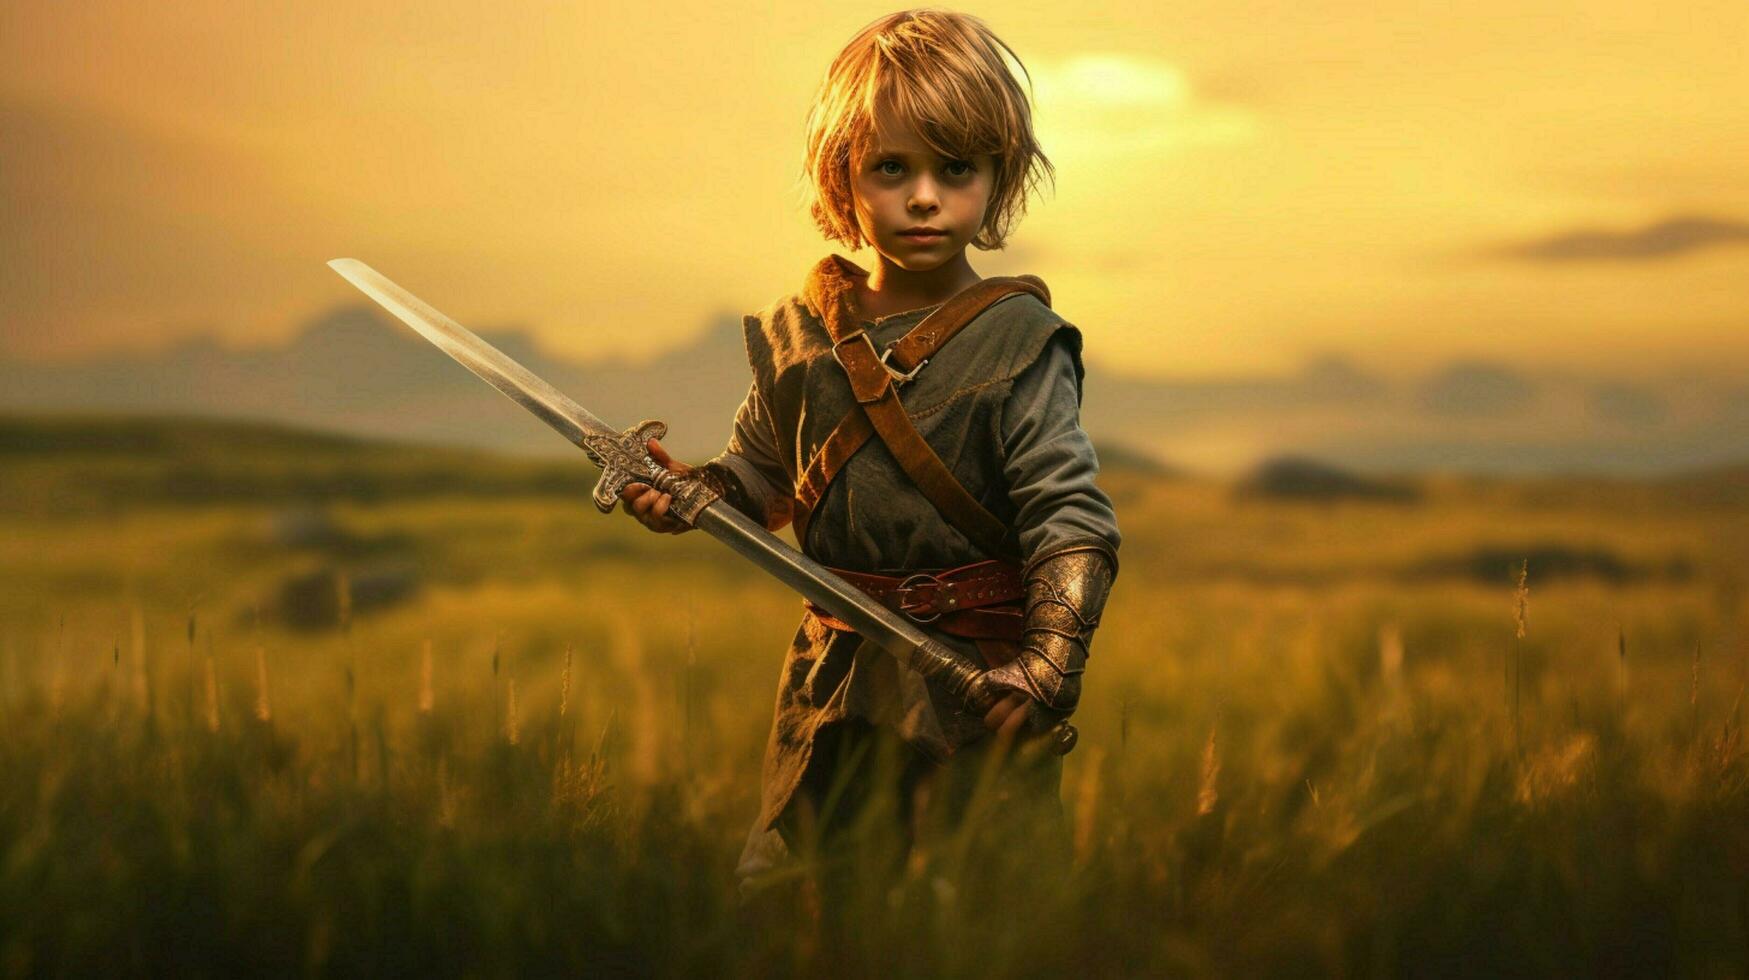 guerrier enfant avec épée jeu fictif monde photo